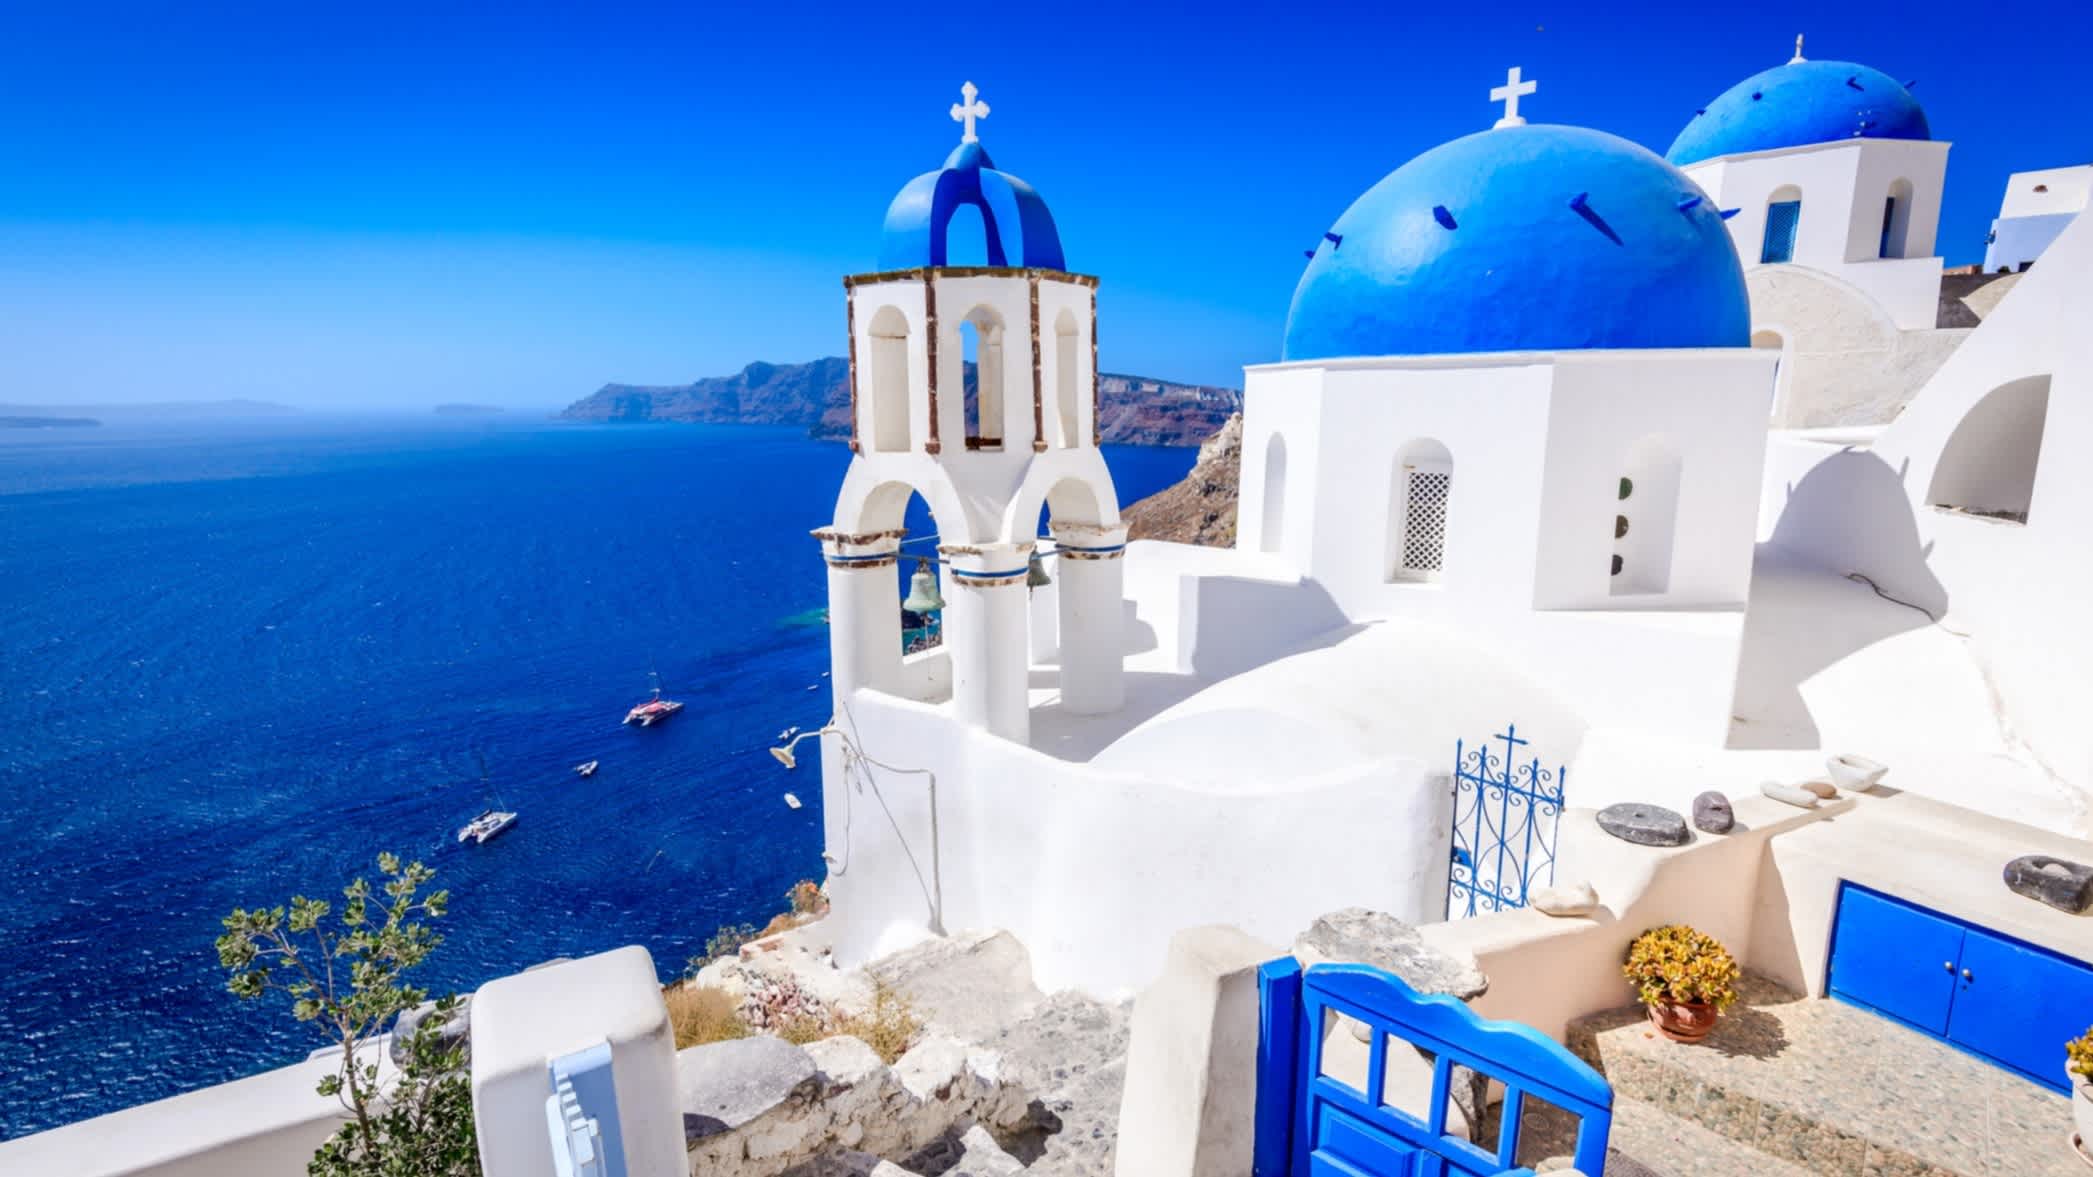 Die Insel Santorin, Griechenland. Oia Stadt traditionelle weiße H�äuser und Kirchen mit blauen Kuppeln über der Caldera, Ägäis.
